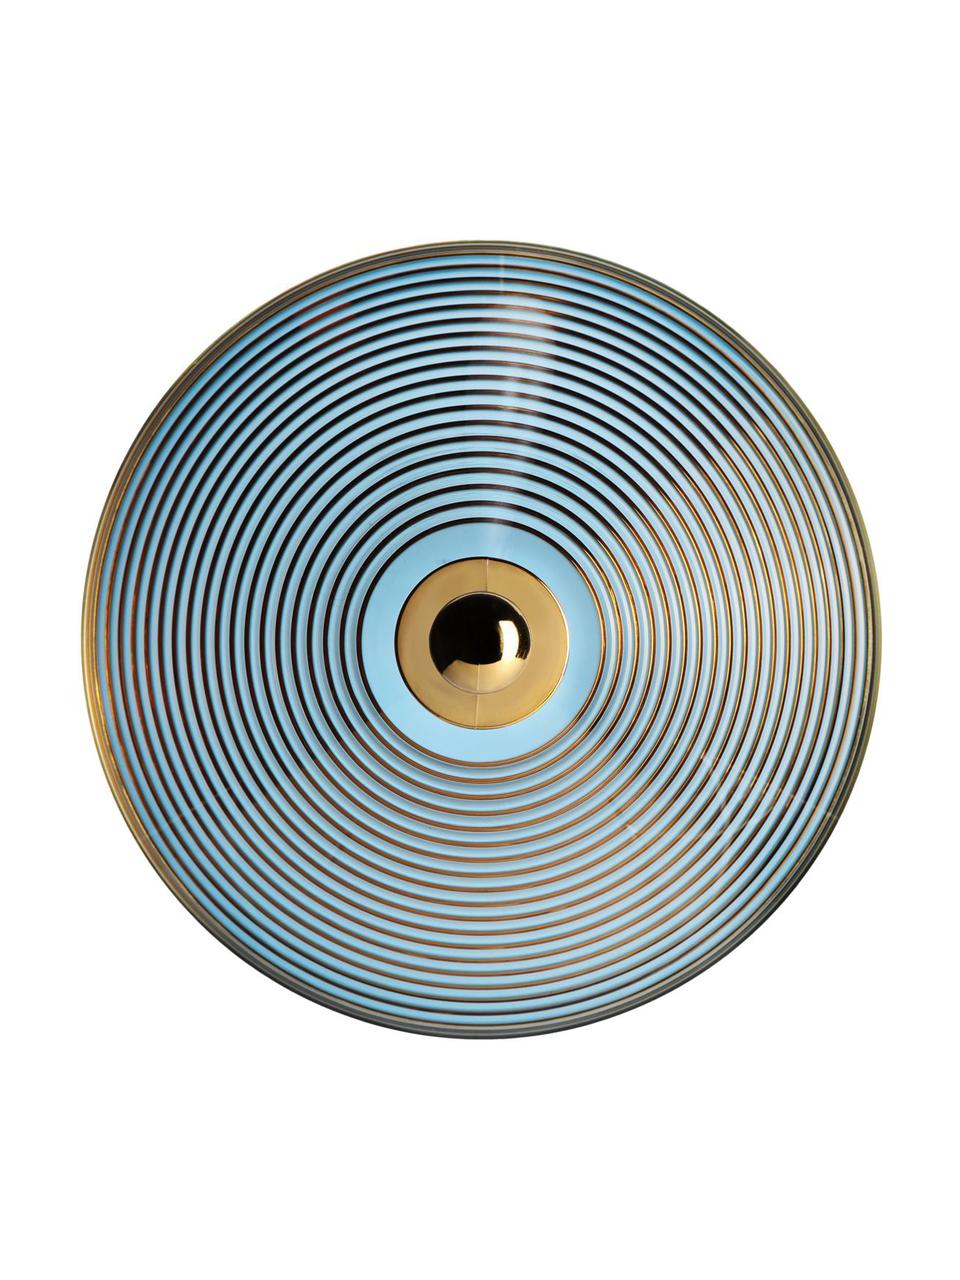 Aufbewahrungsdose Trullo, Griff: Kunststoff, metallisiert, Gelb, Blau, Ø 25 x H 27 cm